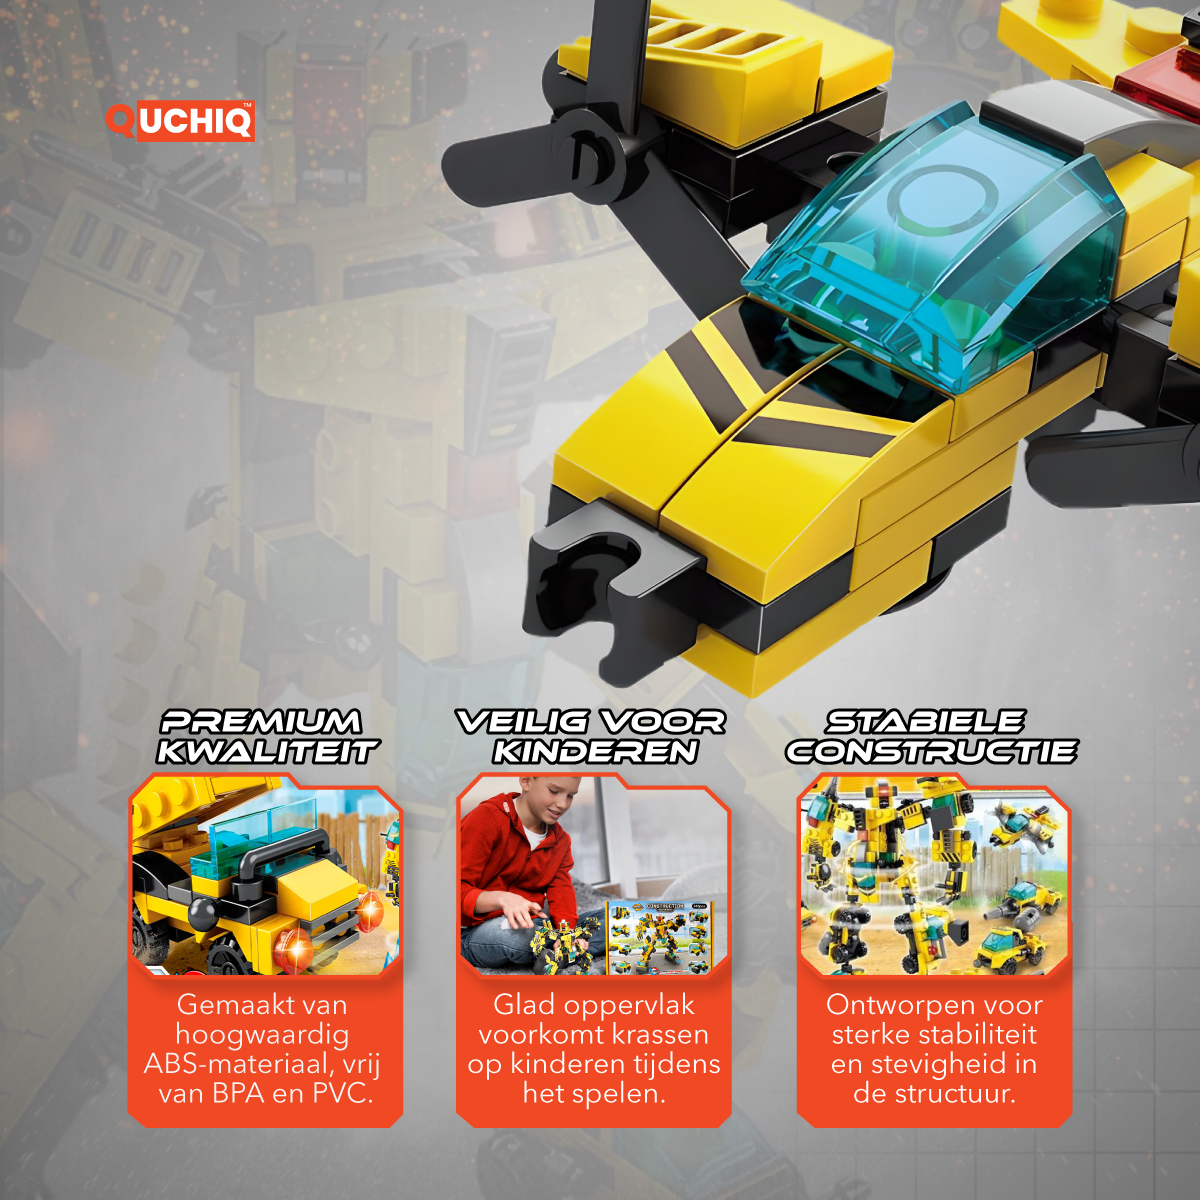 QUCHIQ Transformers Roboter 346 Bausteine Bausatz